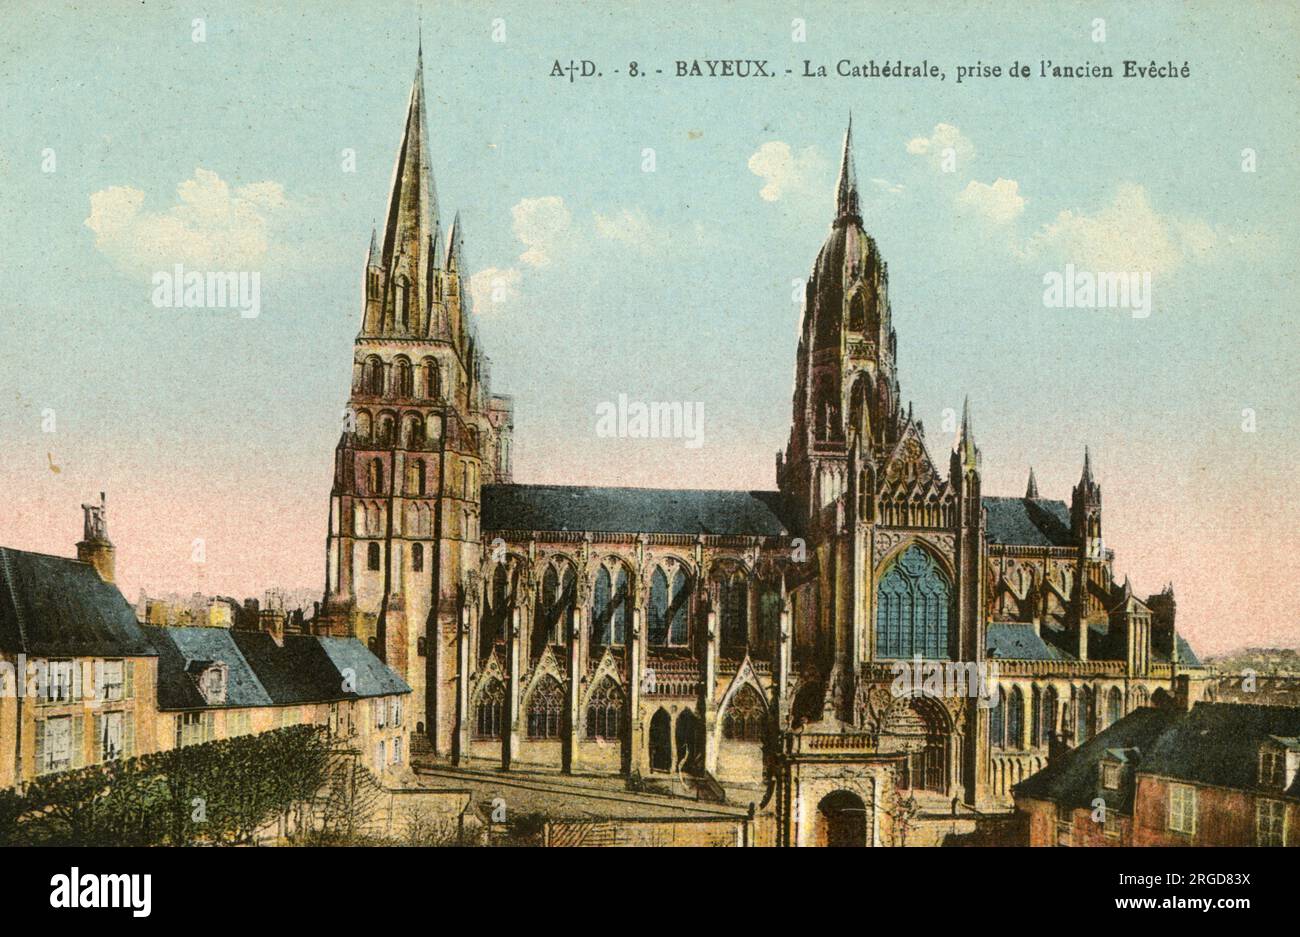 La cathédrale, Bayeux, France Banque D'Images